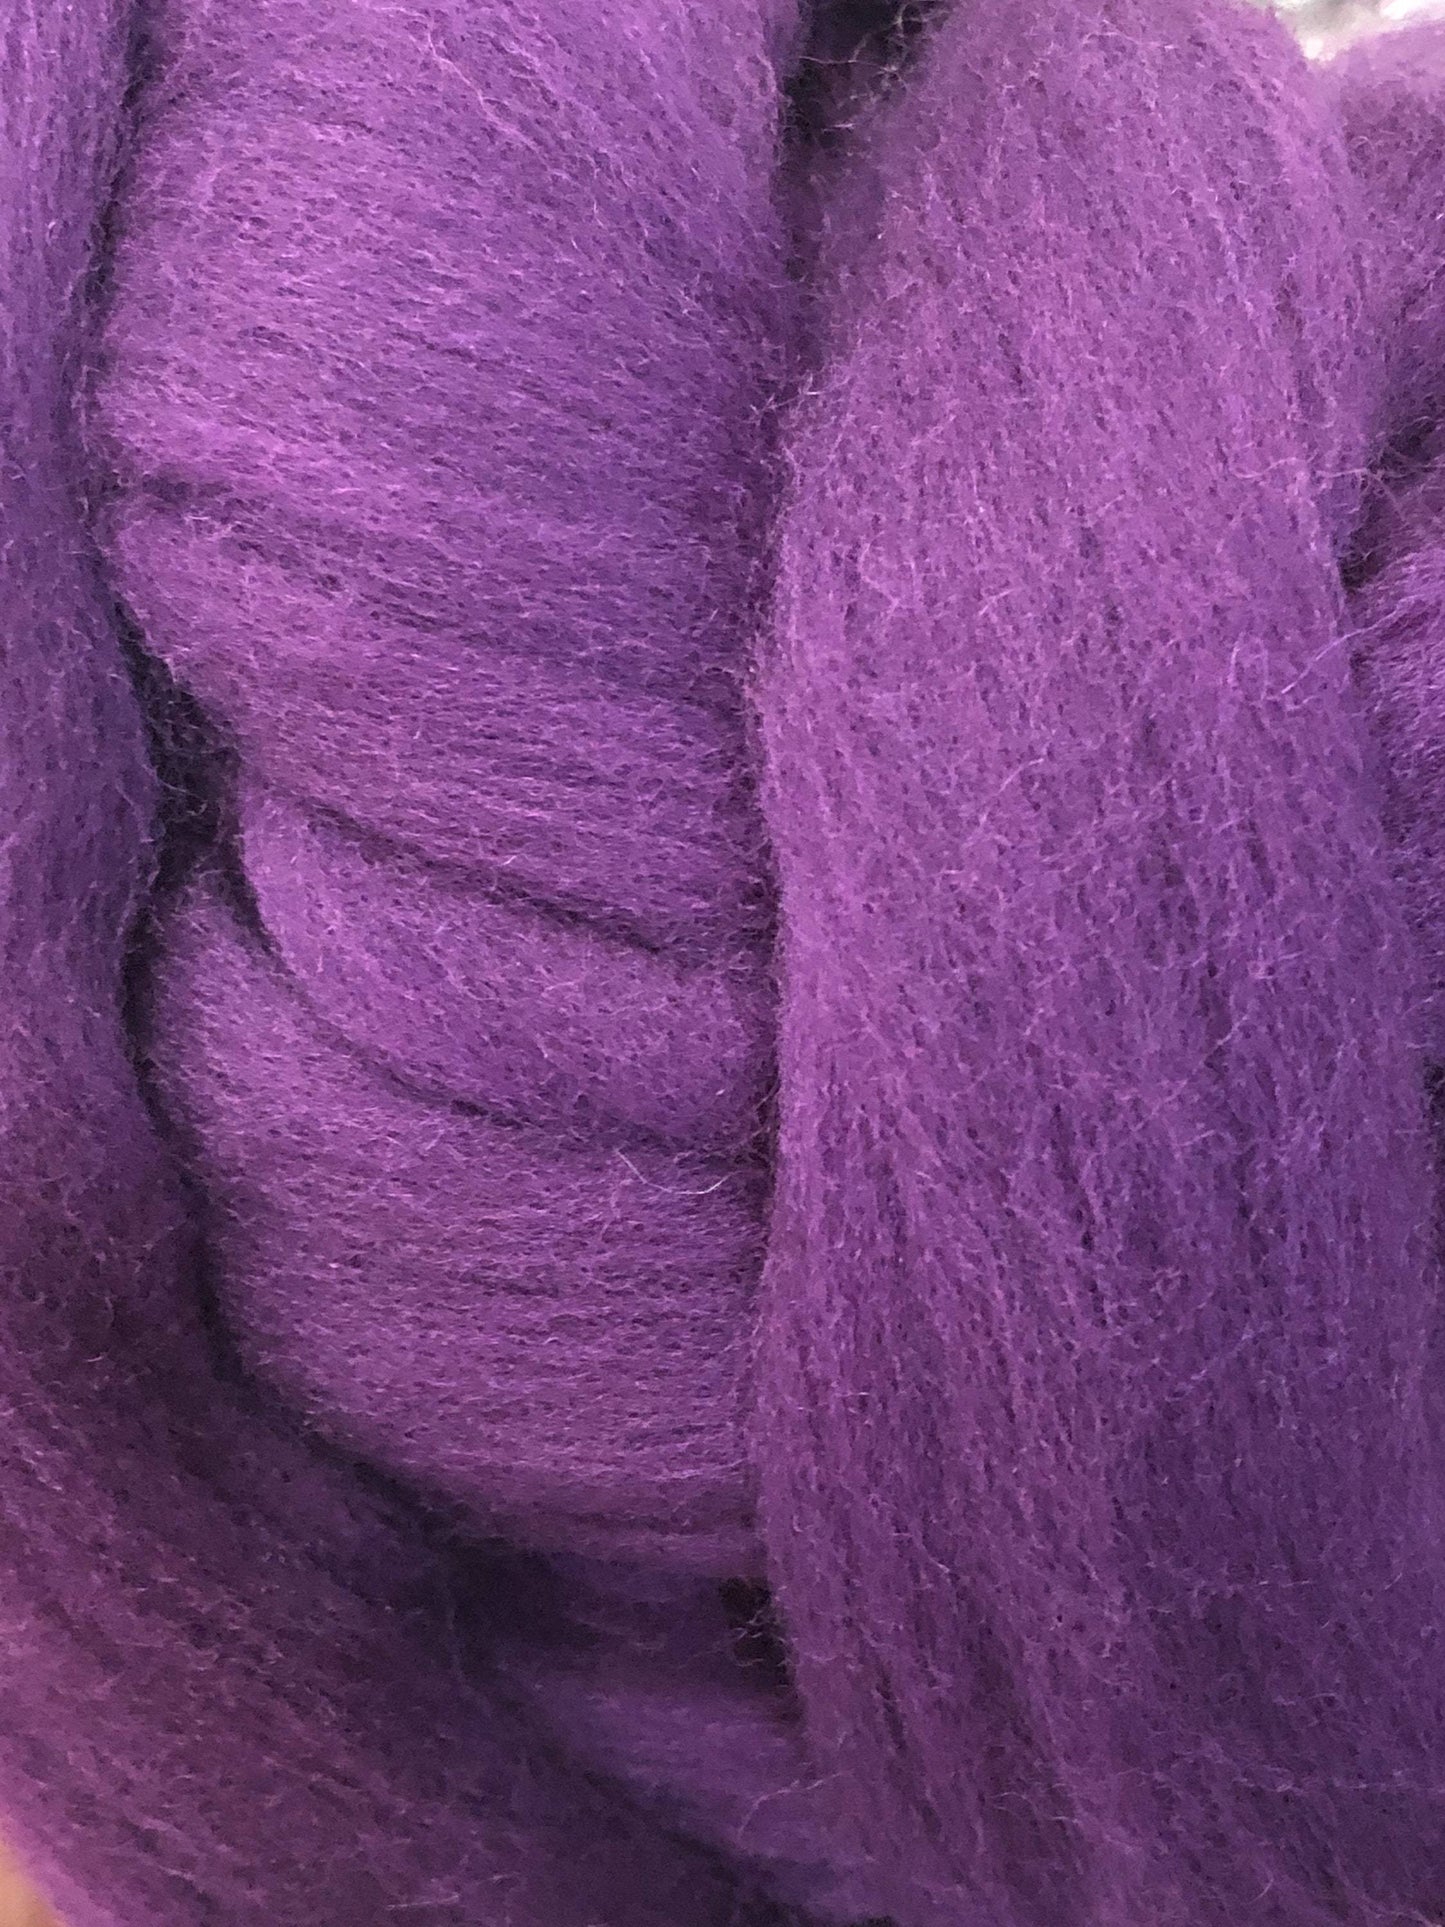 Purple Grape Merino Wool Top Roving